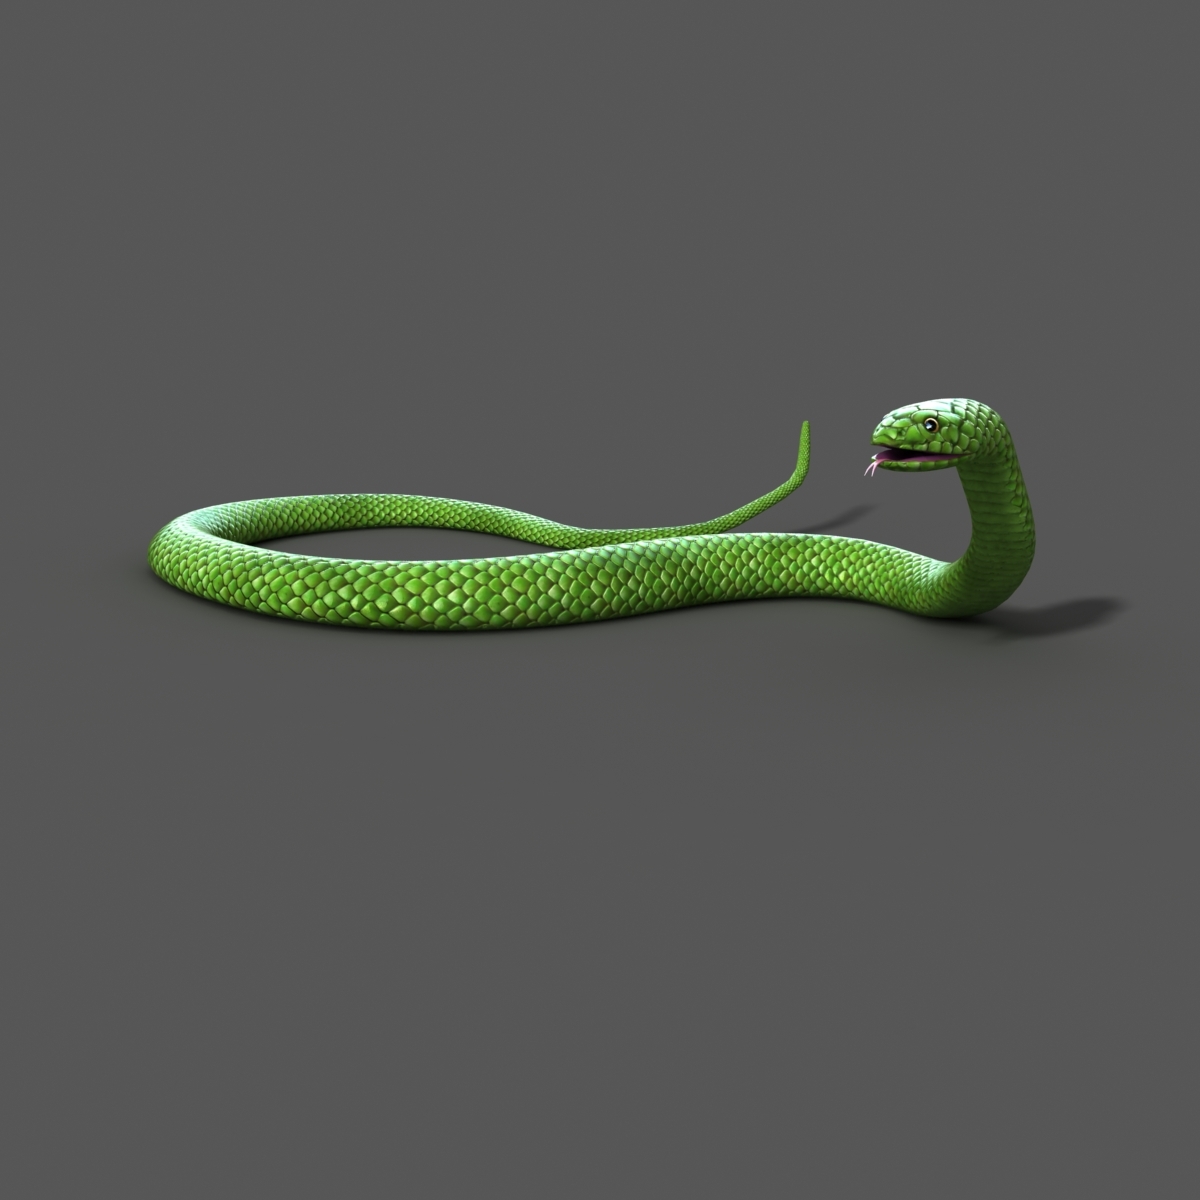 snake rigged 3d model